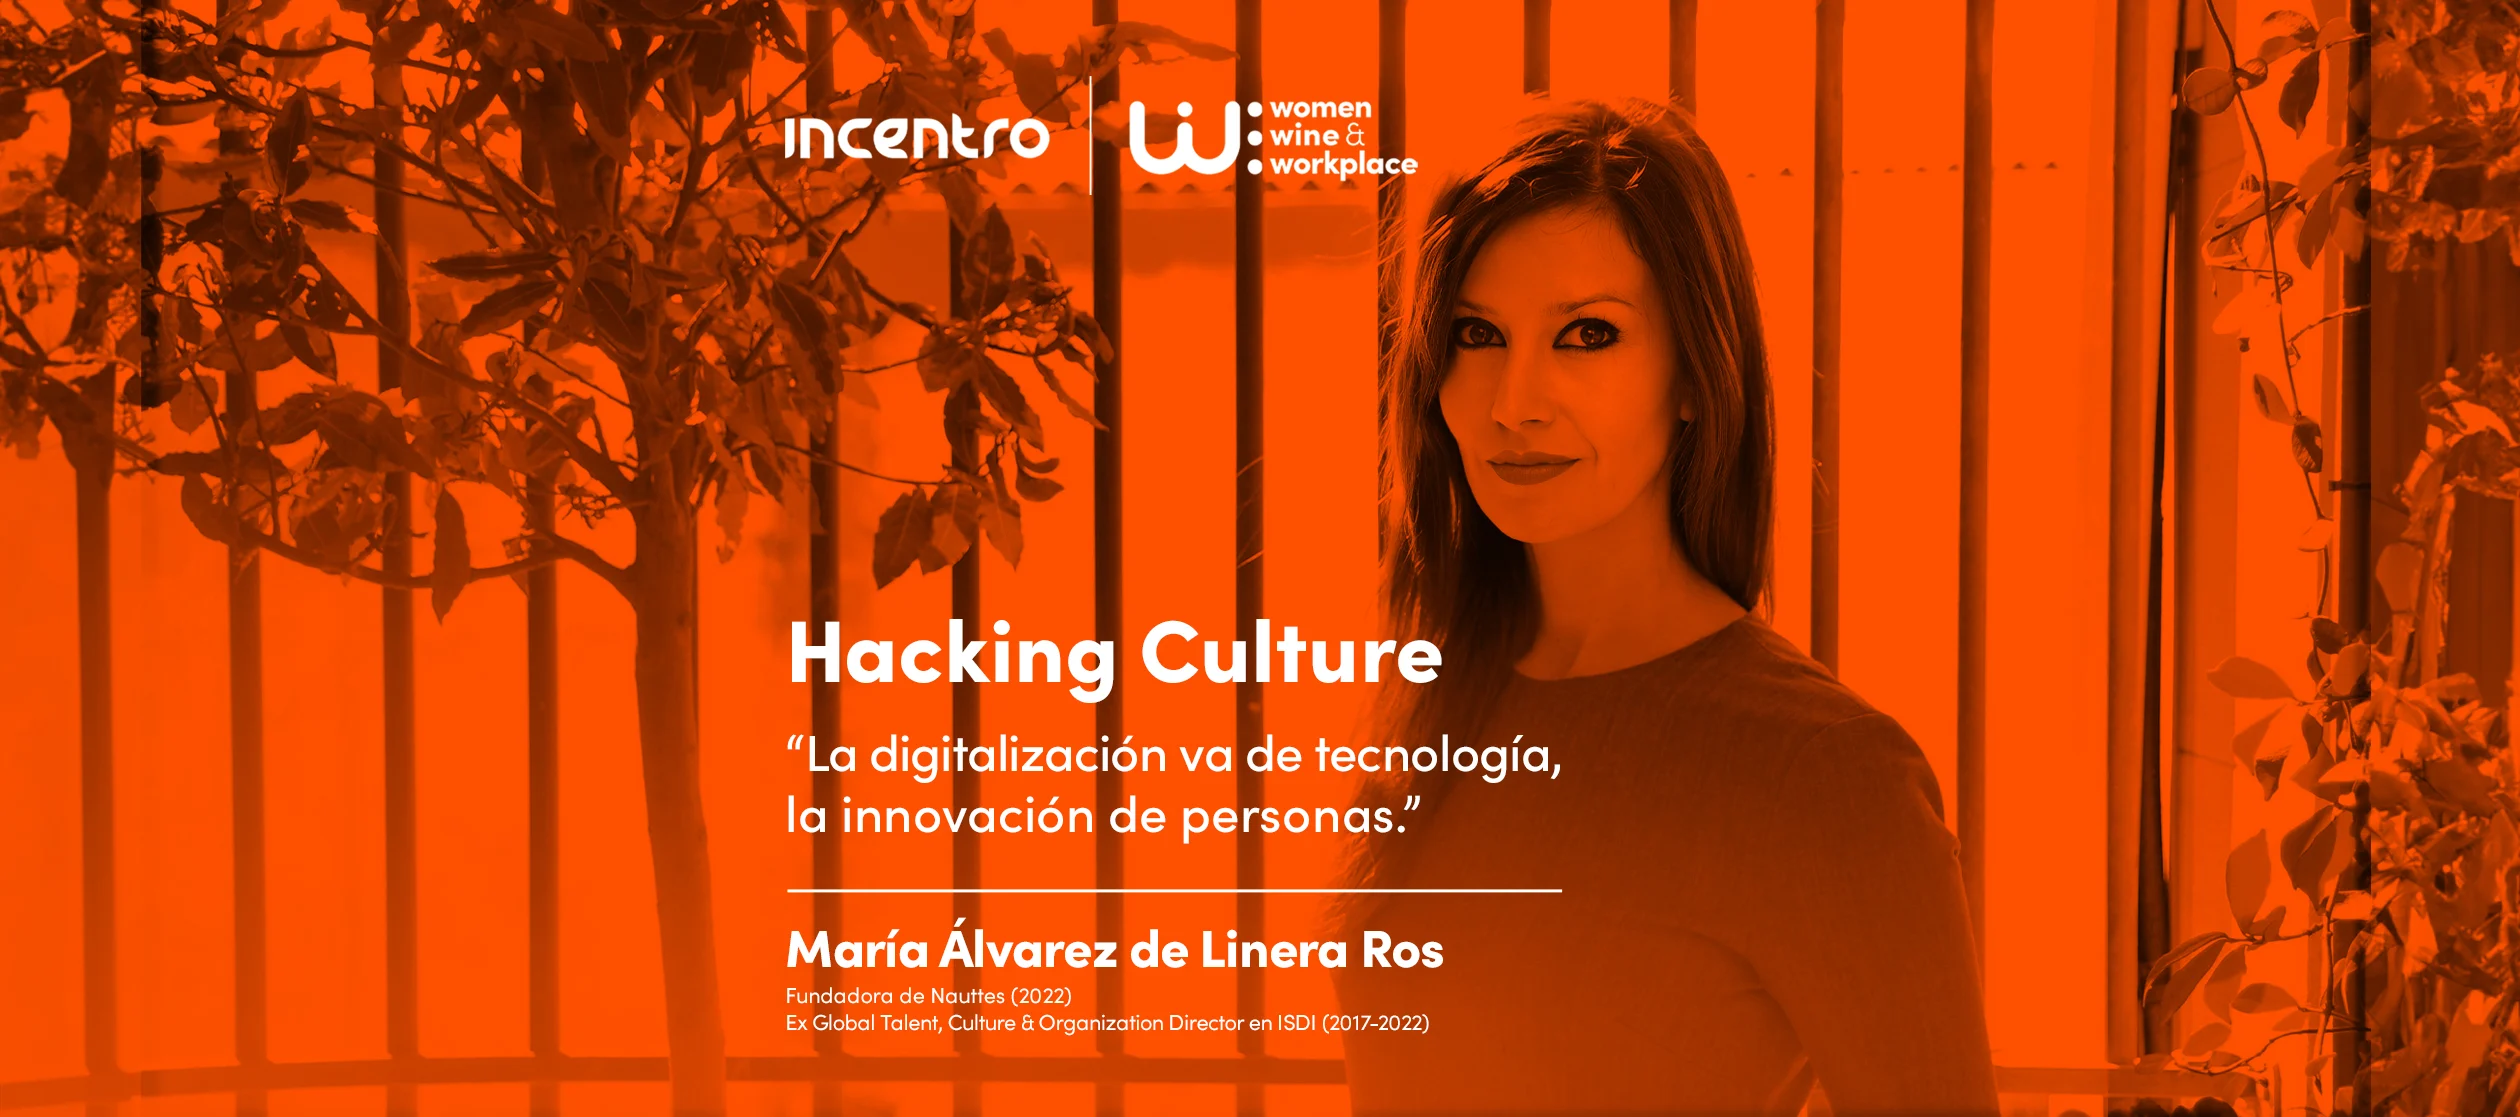 María Álvarez de Linera nos habla de Hacking Culture en la 2º edición de Incentro WWW (Women, Winr & Workplace)